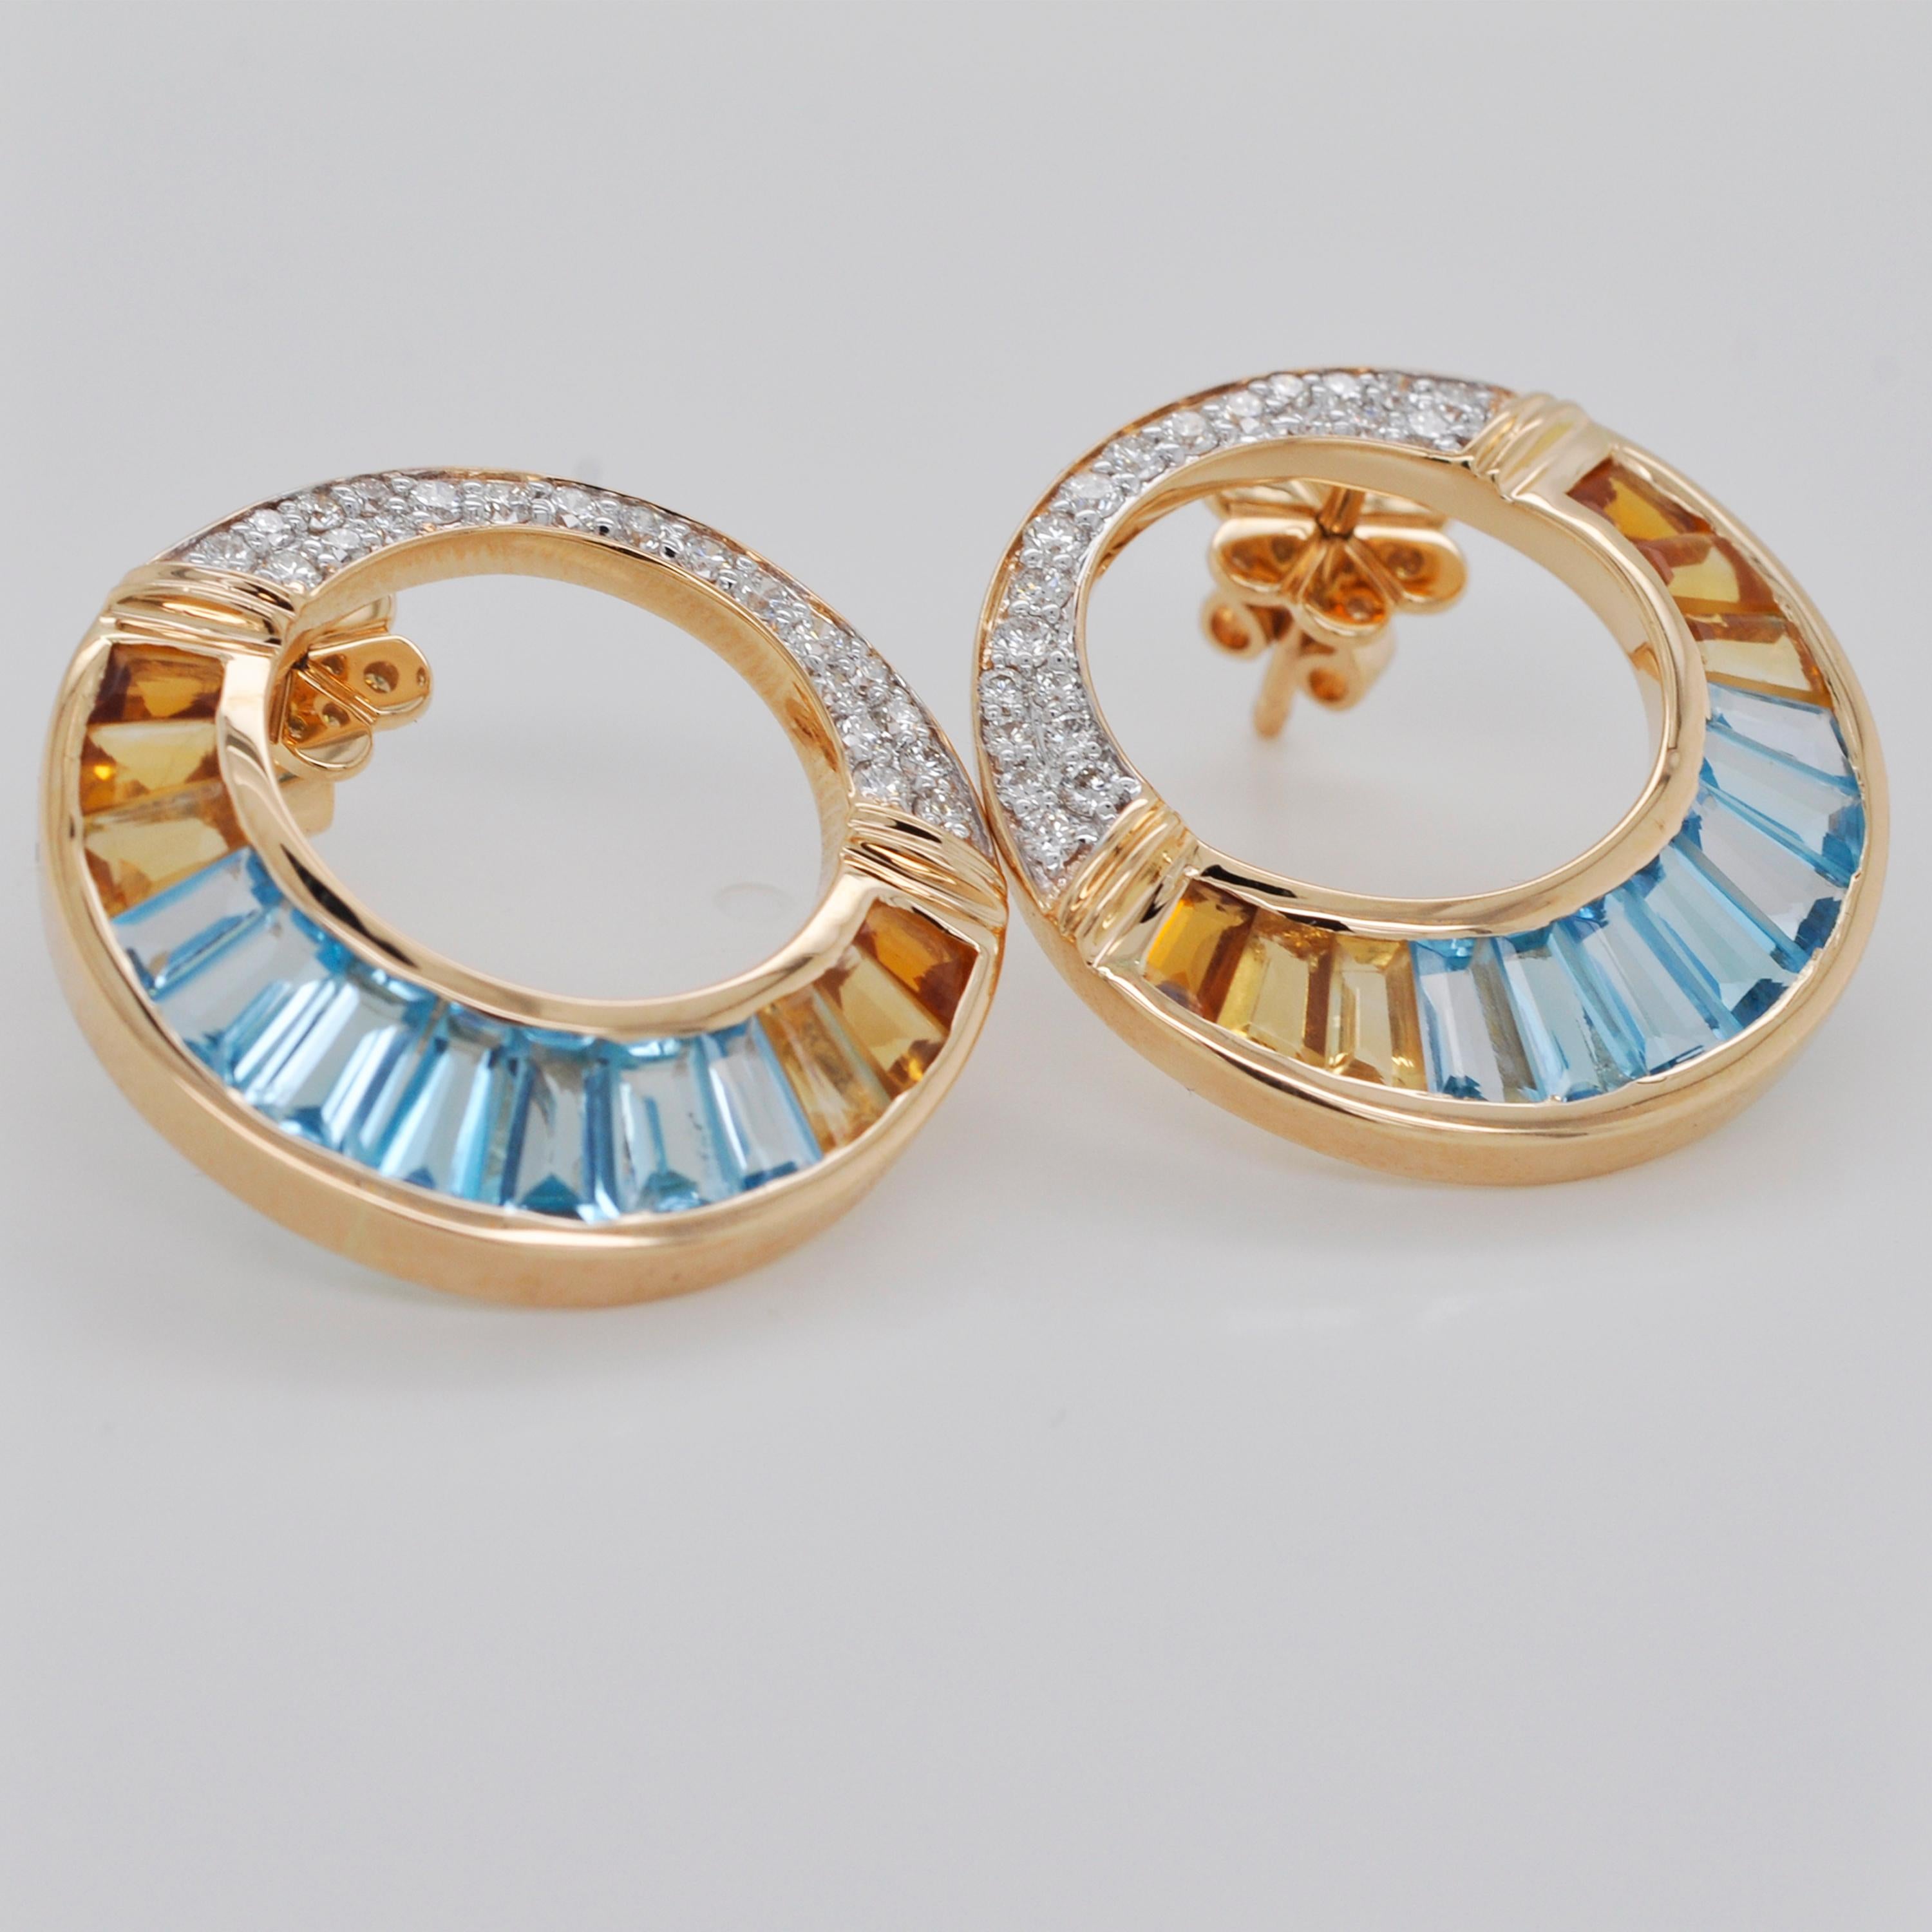 18K Gold Swiss Blue Topaz Citrine Baguette Diamond Pendant Brooch Earrings Set For Sale 8